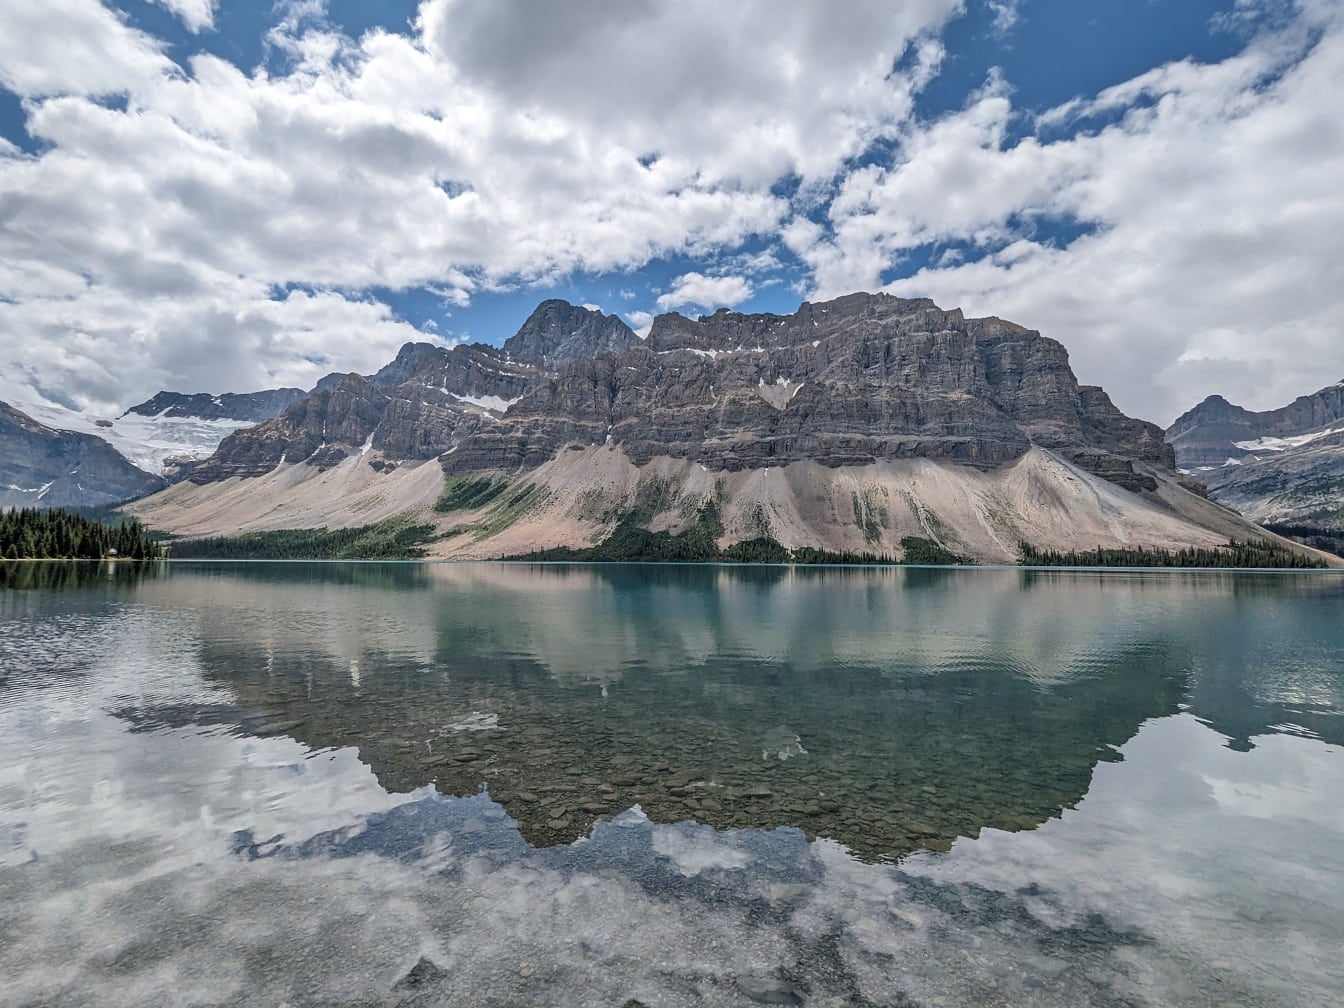 Peisaj maiestuos pe malul lacului Bow cu reflexie montană